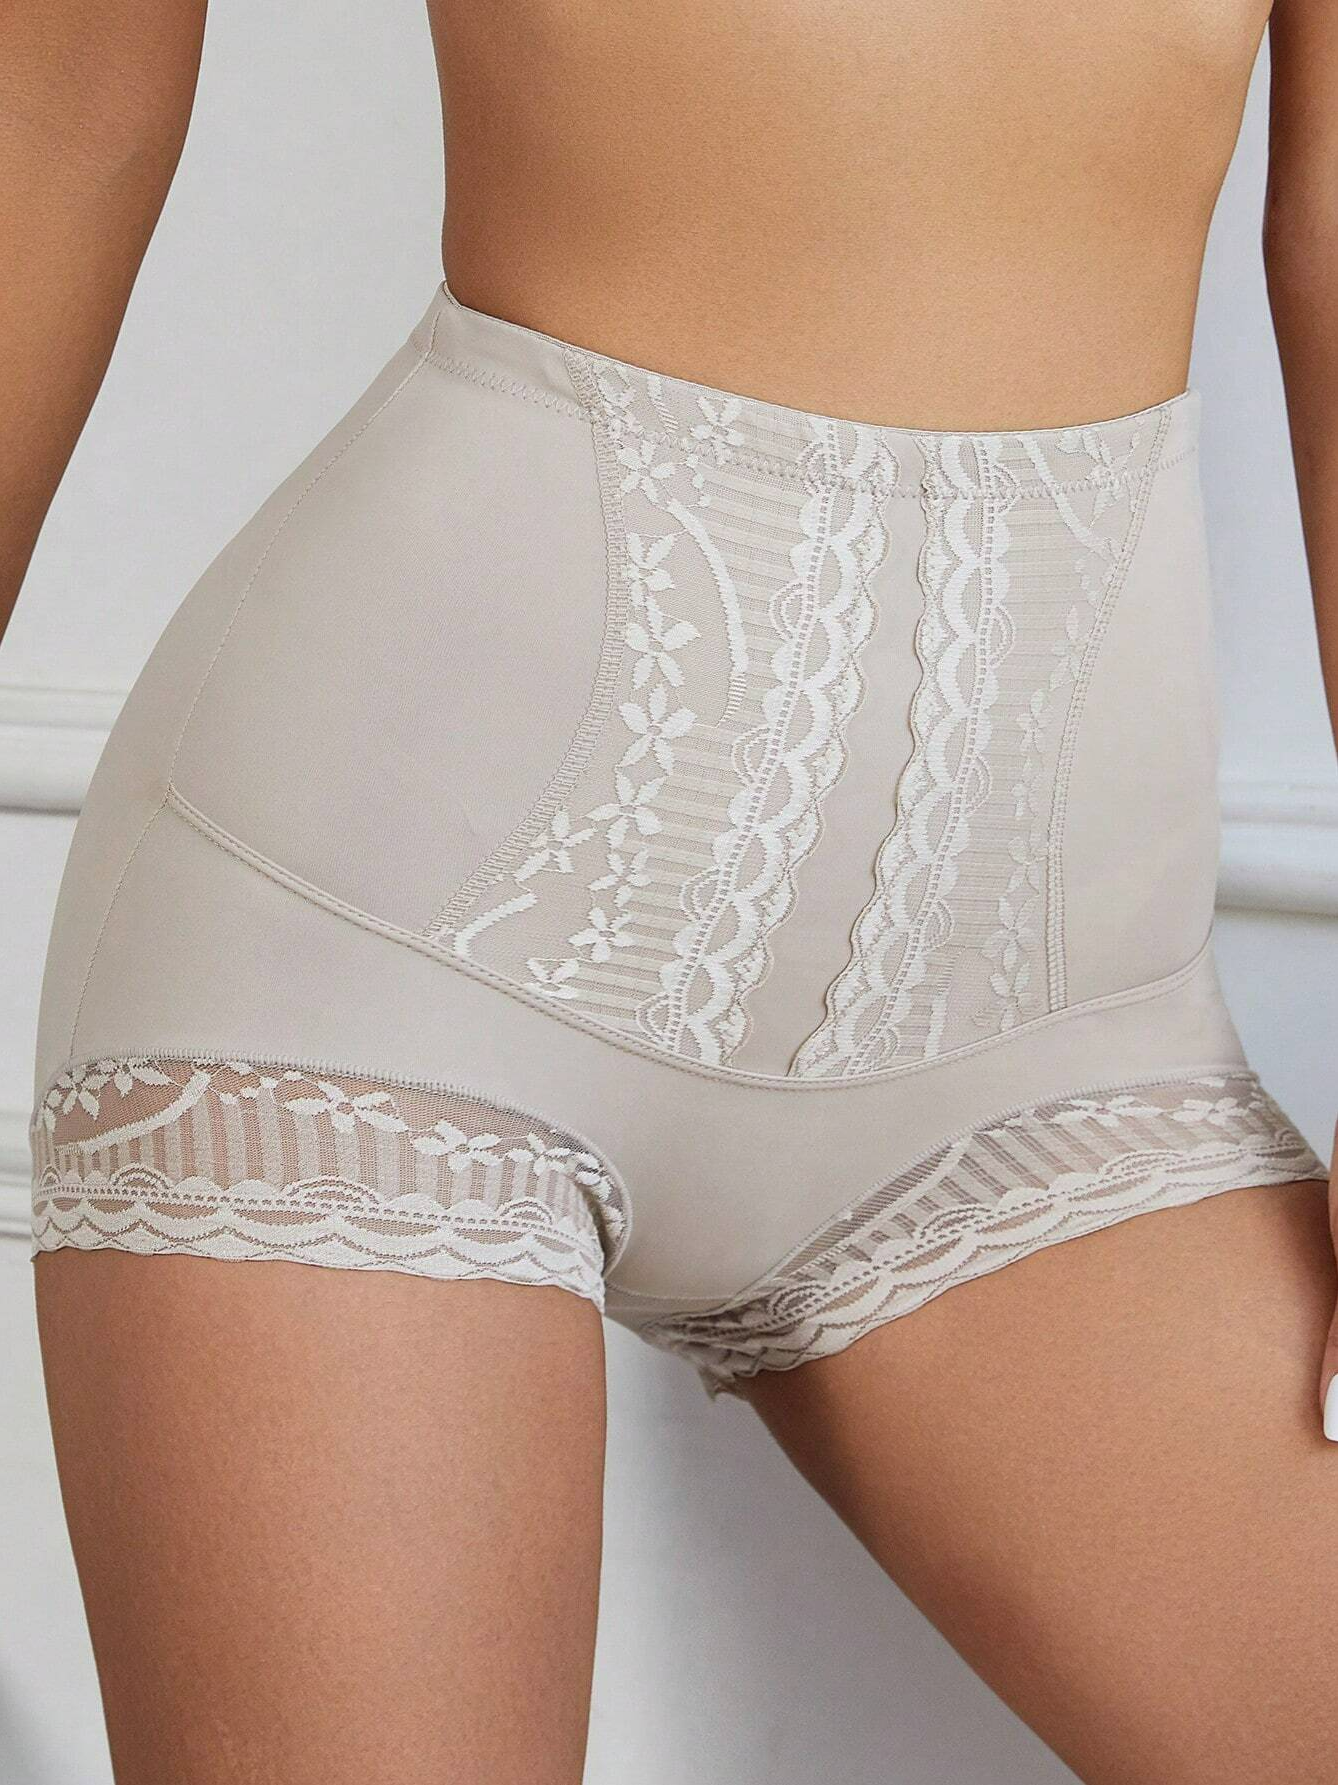 Plain Lace Casual Panty